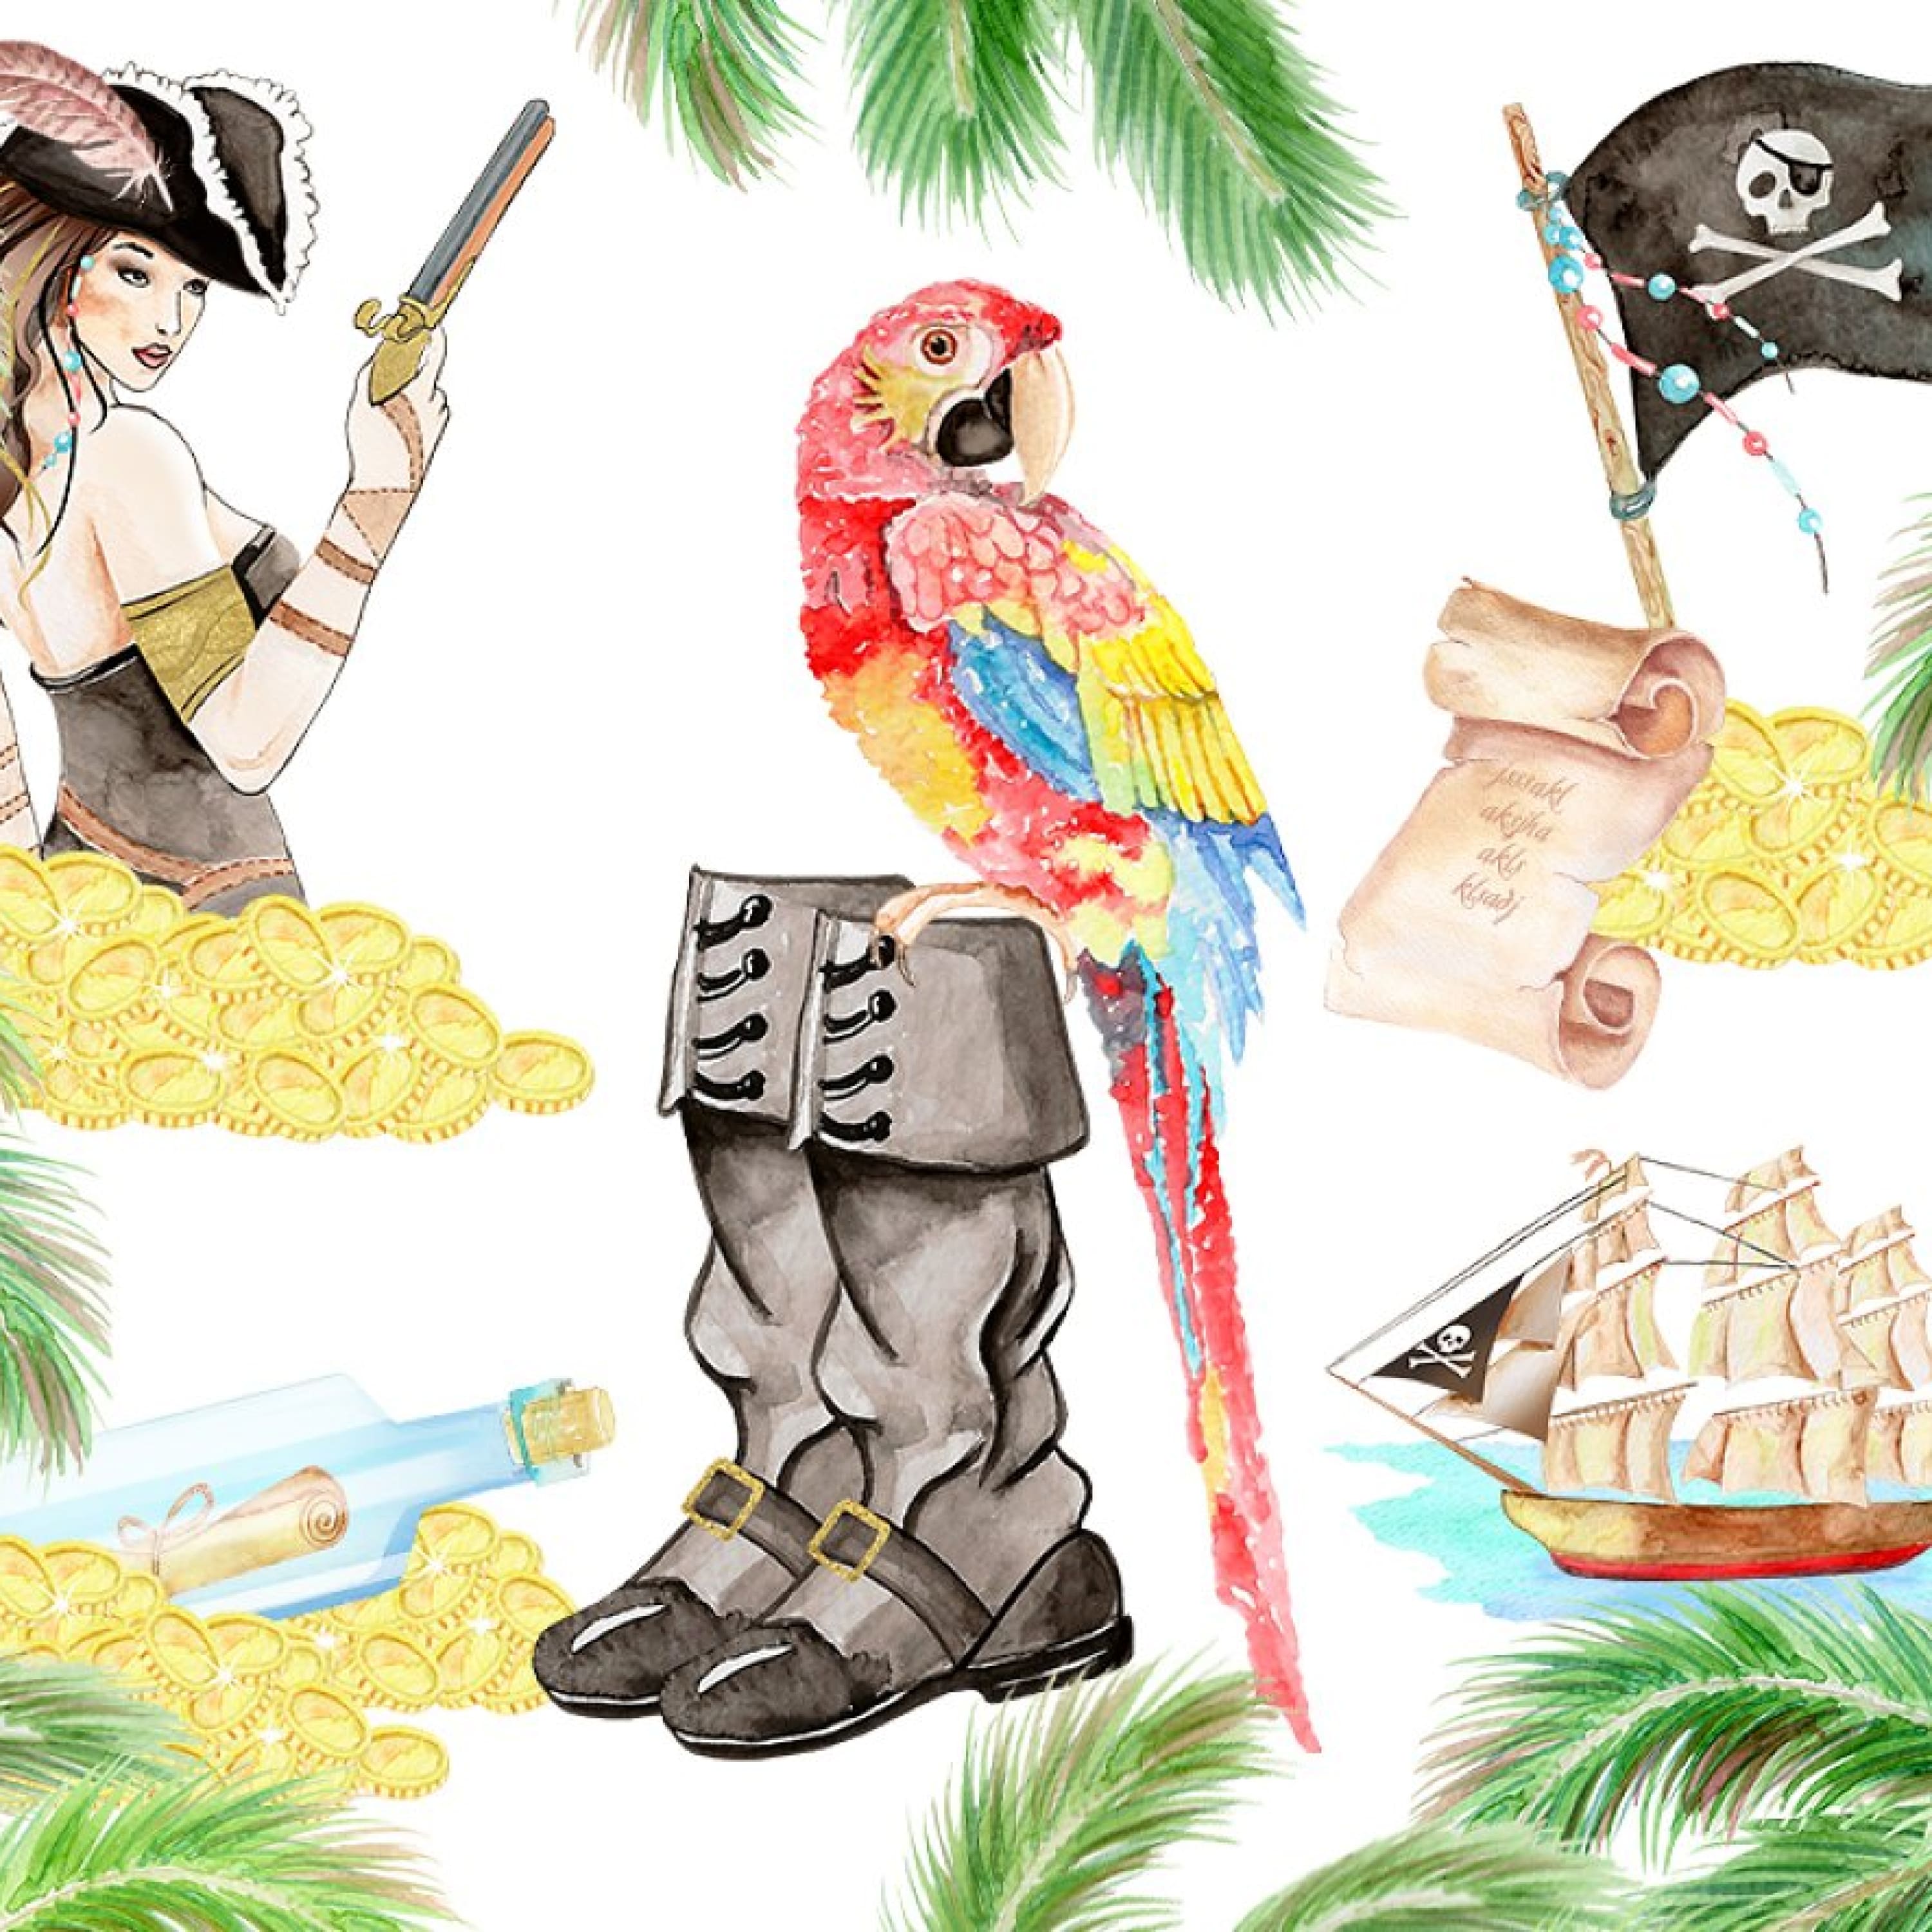 Watercolor Sexy Pirates cover.